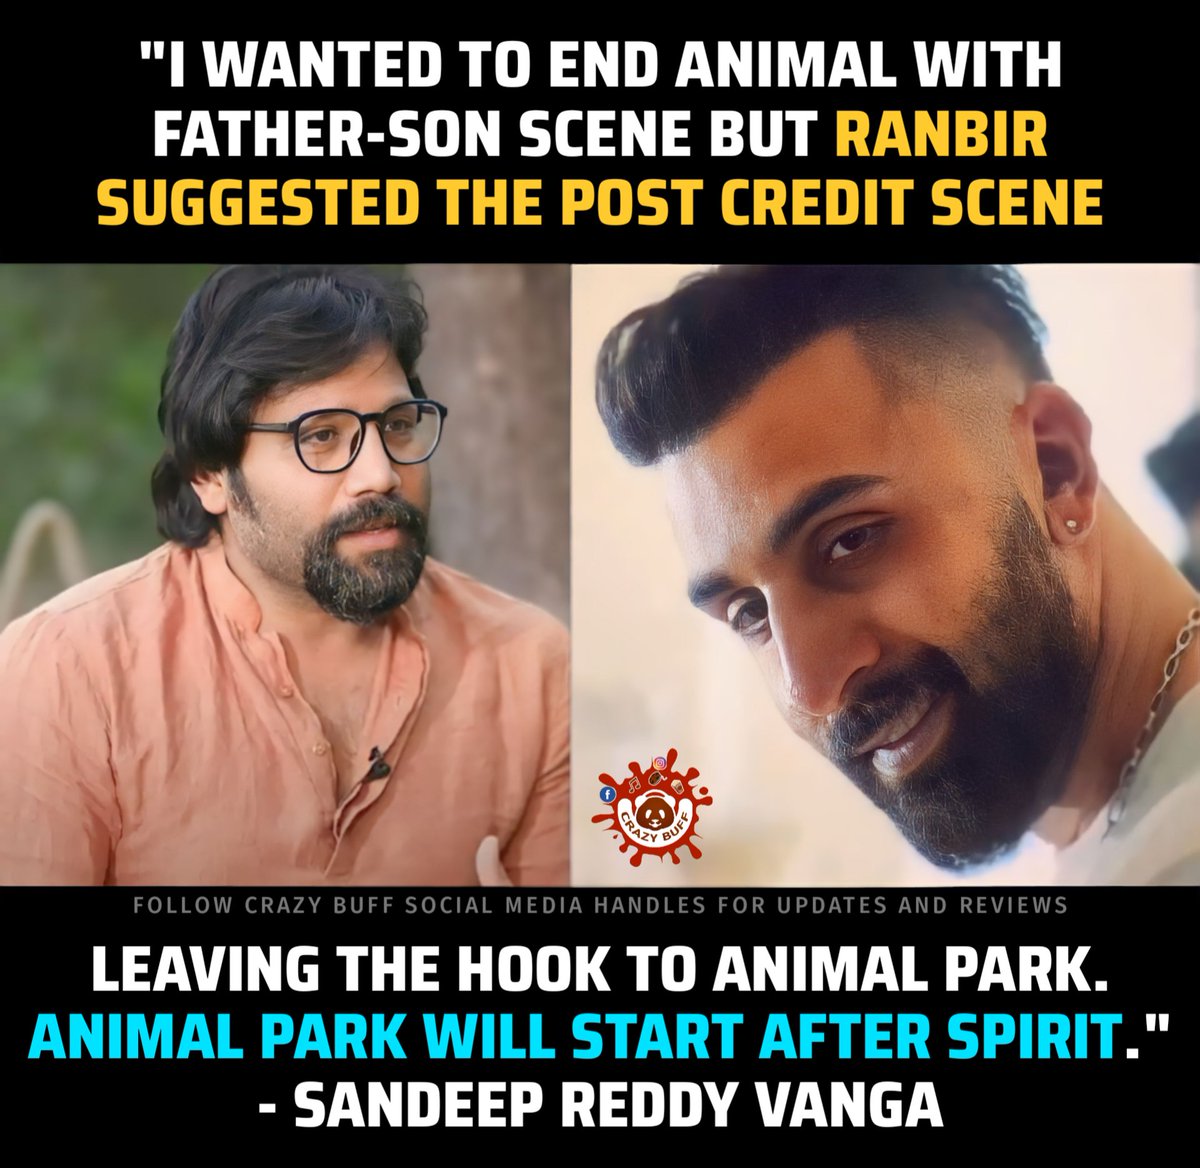 #Ranbir suggested the post credit scene of #ANIMAL. - #SandeepReddyVanga

#AnimalTheFilm #AnimalTheMovie #AnimalBoxOffice #RanbirKapoor #SandeepVanga #AnimalPark